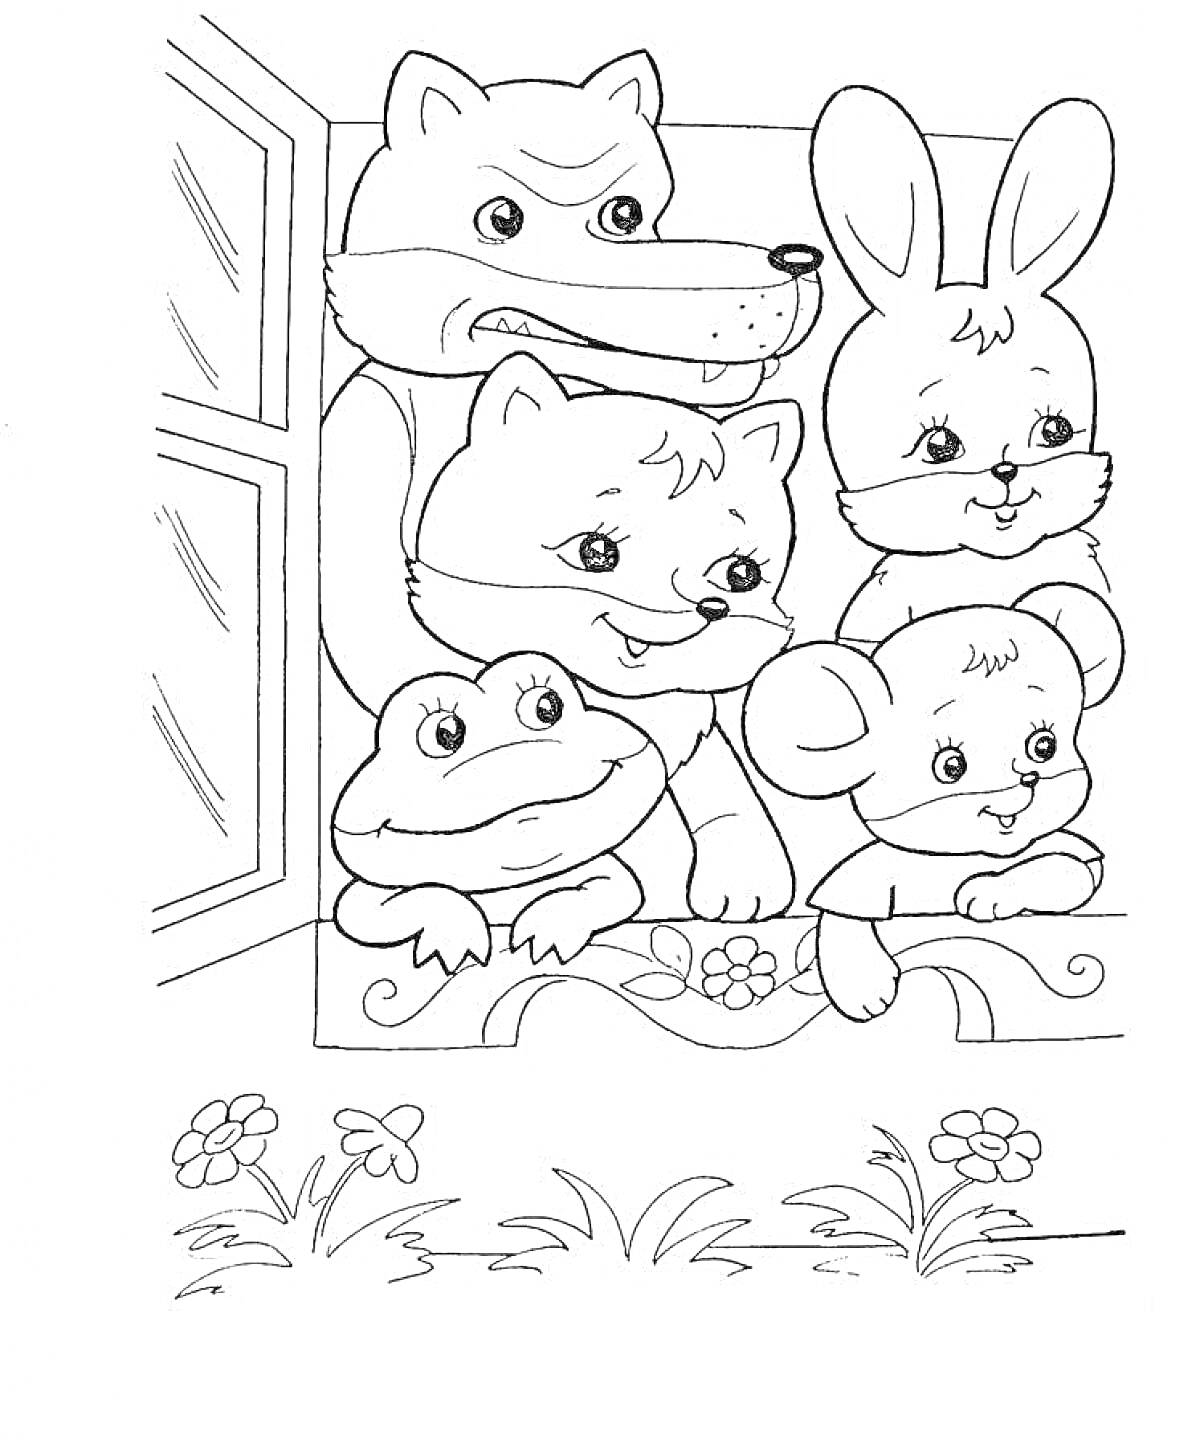 Раскраска Теремок с волком, зайцем, медвежонком, лягушкой и мышкой в окне, цветы и трава на переднем плане